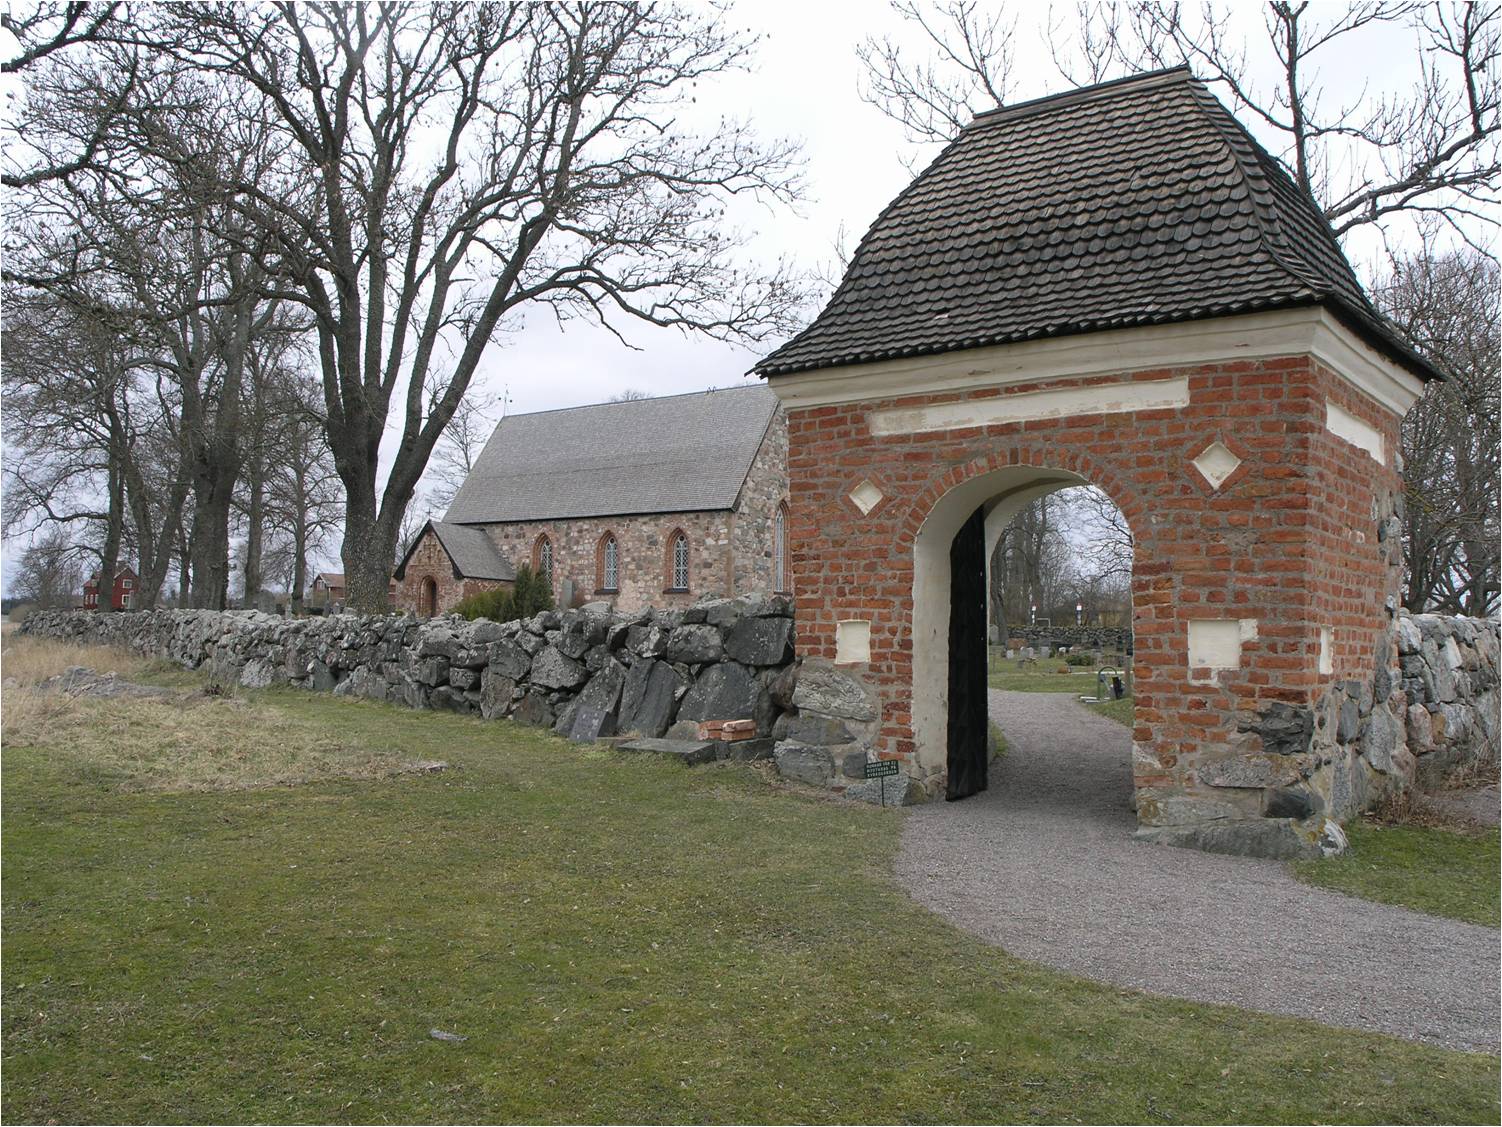 Stiglucka av tegel med spåntäckt karnisformat tak uppförd under åren 1691-92 i bogårdsmurens sydvästra hörn. 